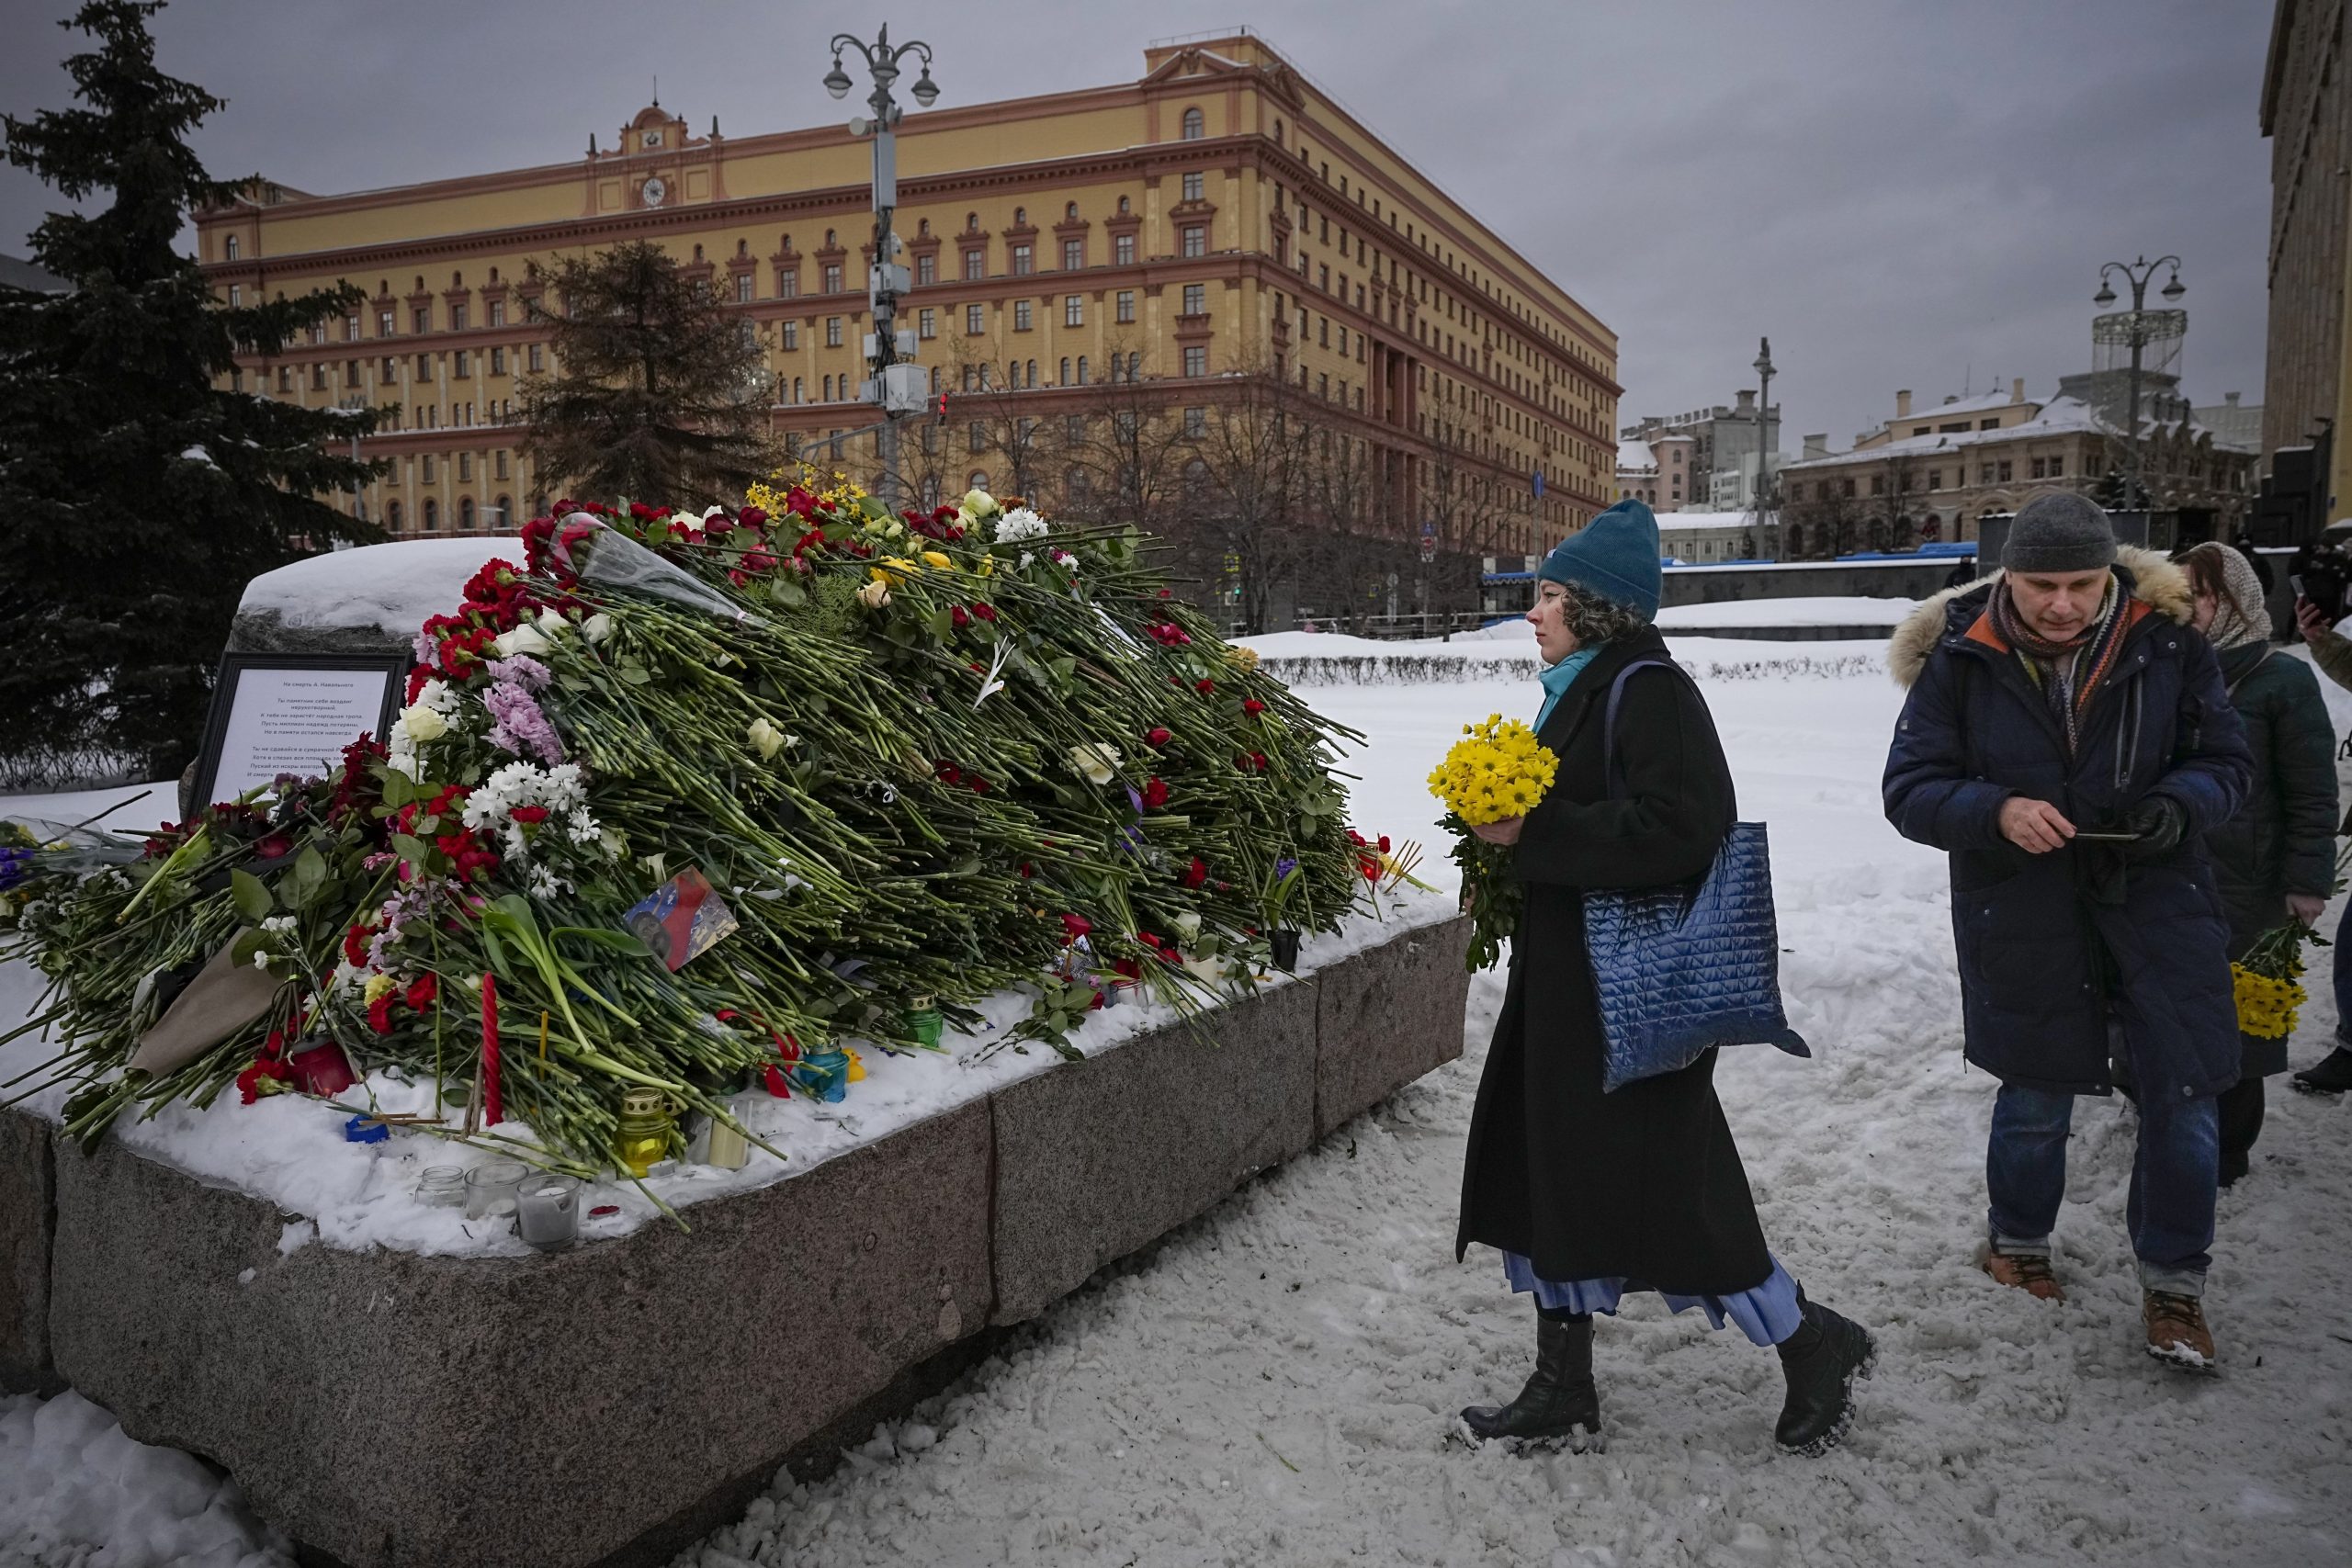 Nonostante il pesante clima autoritario in Russia, molte persone continuano a deporre fiori in memoria di Navalny, anche a Mosca.